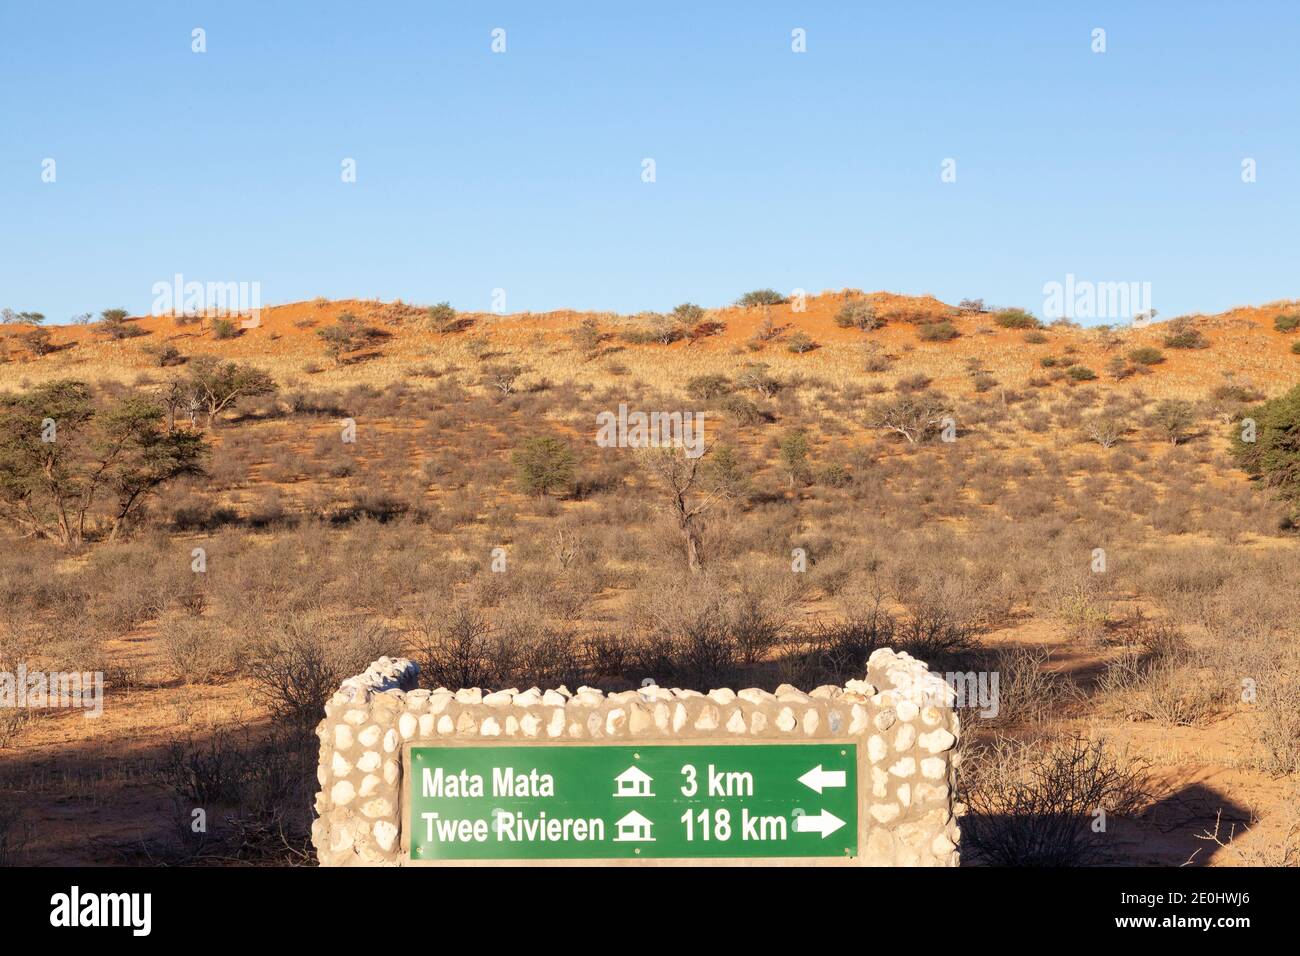 Mata Mata to Twee Rivieren road sign at sunset, Kgalagadi Transfrontier  Park, Kalahari, Northern Cape, South Africa Stock Photo - Alamy